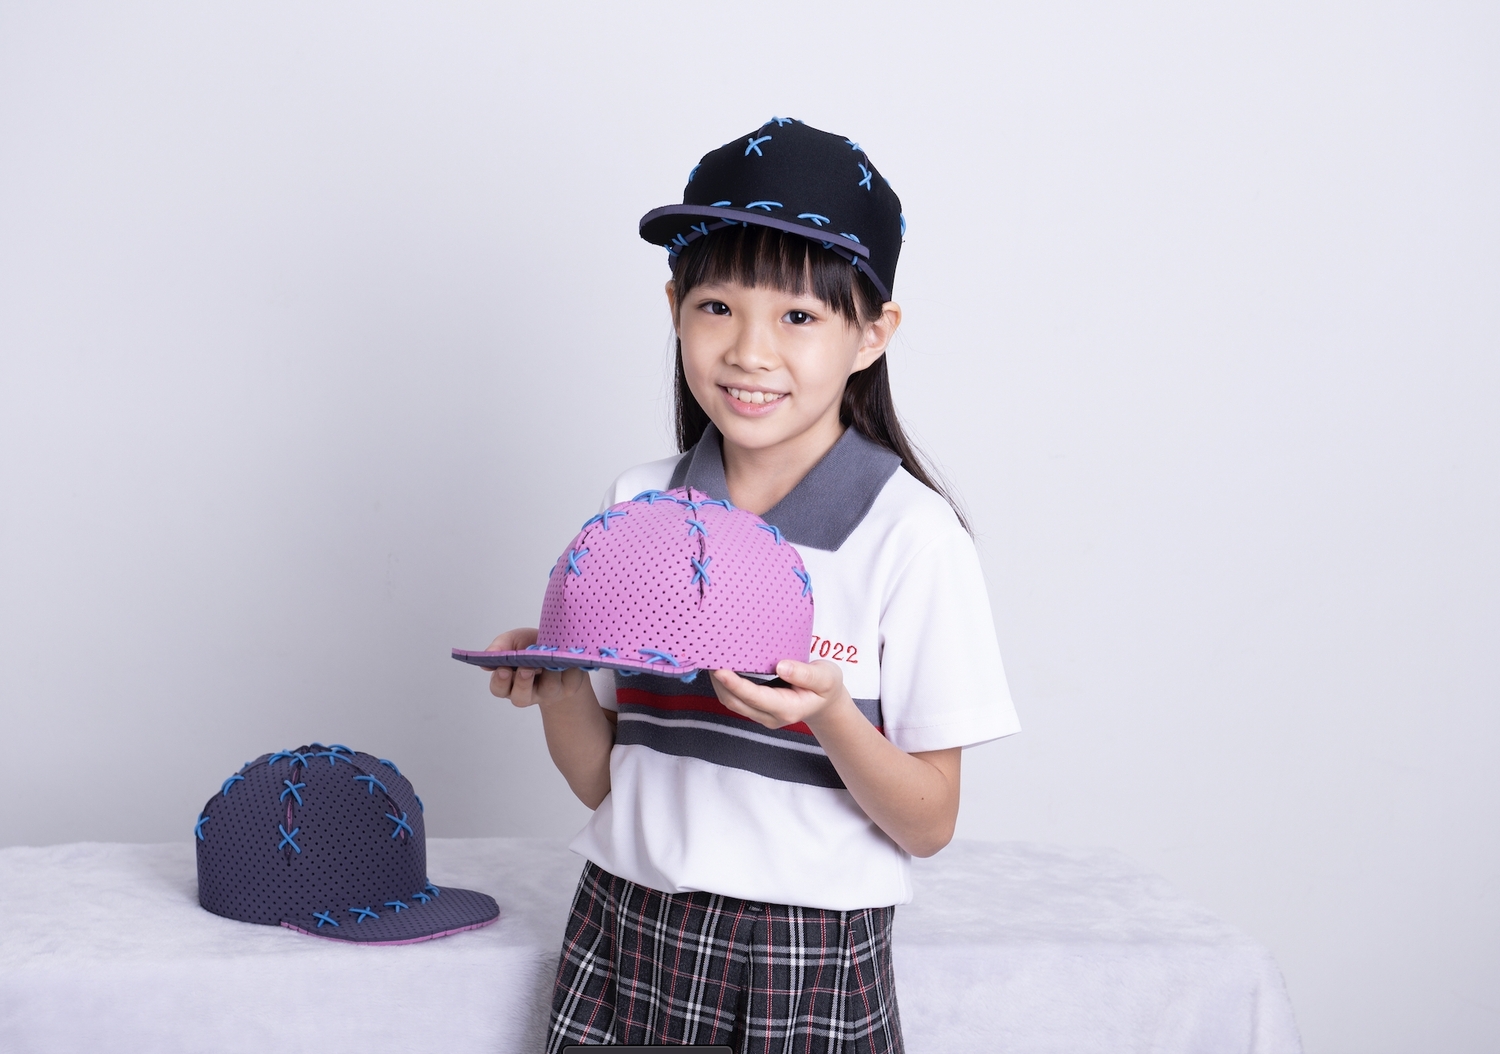 大里國小四年級生葉倖綺更獲得本屆年紀最輕金牌得主的殊榮，在也曾是發明展得獎人的阿公引導下，發明的「軟性帽體結構」奪得一面金牌。   圖：中華創新發明學會提供